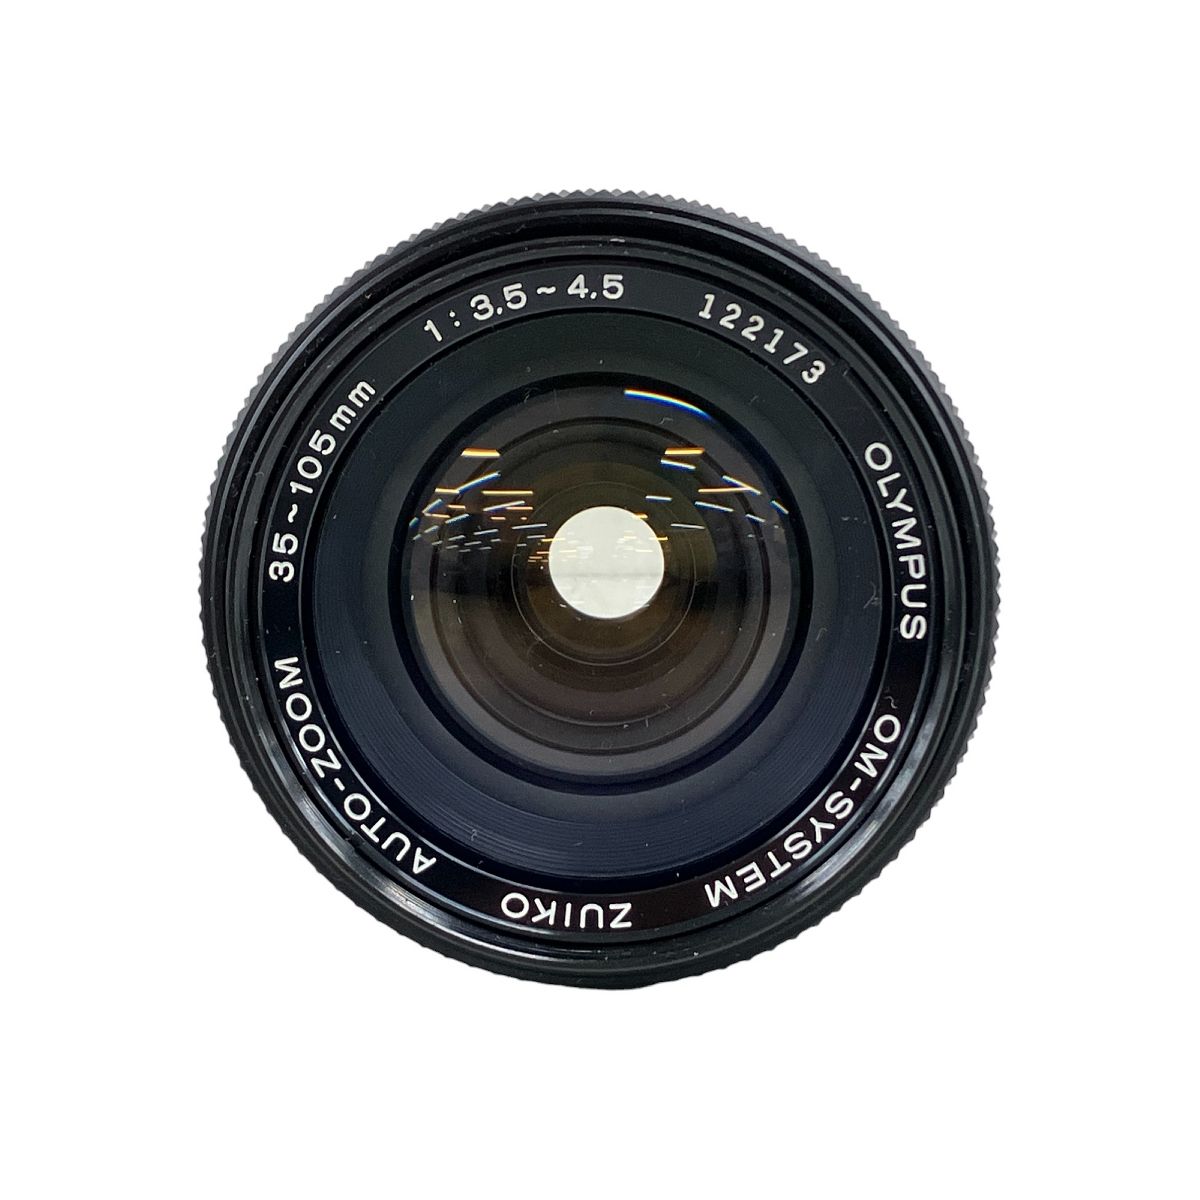 動作保証】OLYMPUS オリンパス OM-SYSTEM ZUIKO AUTO-ZOOM 35-105mm F3.5-4.5 カメラ レンズ 中古  K8967176 - メルカリ